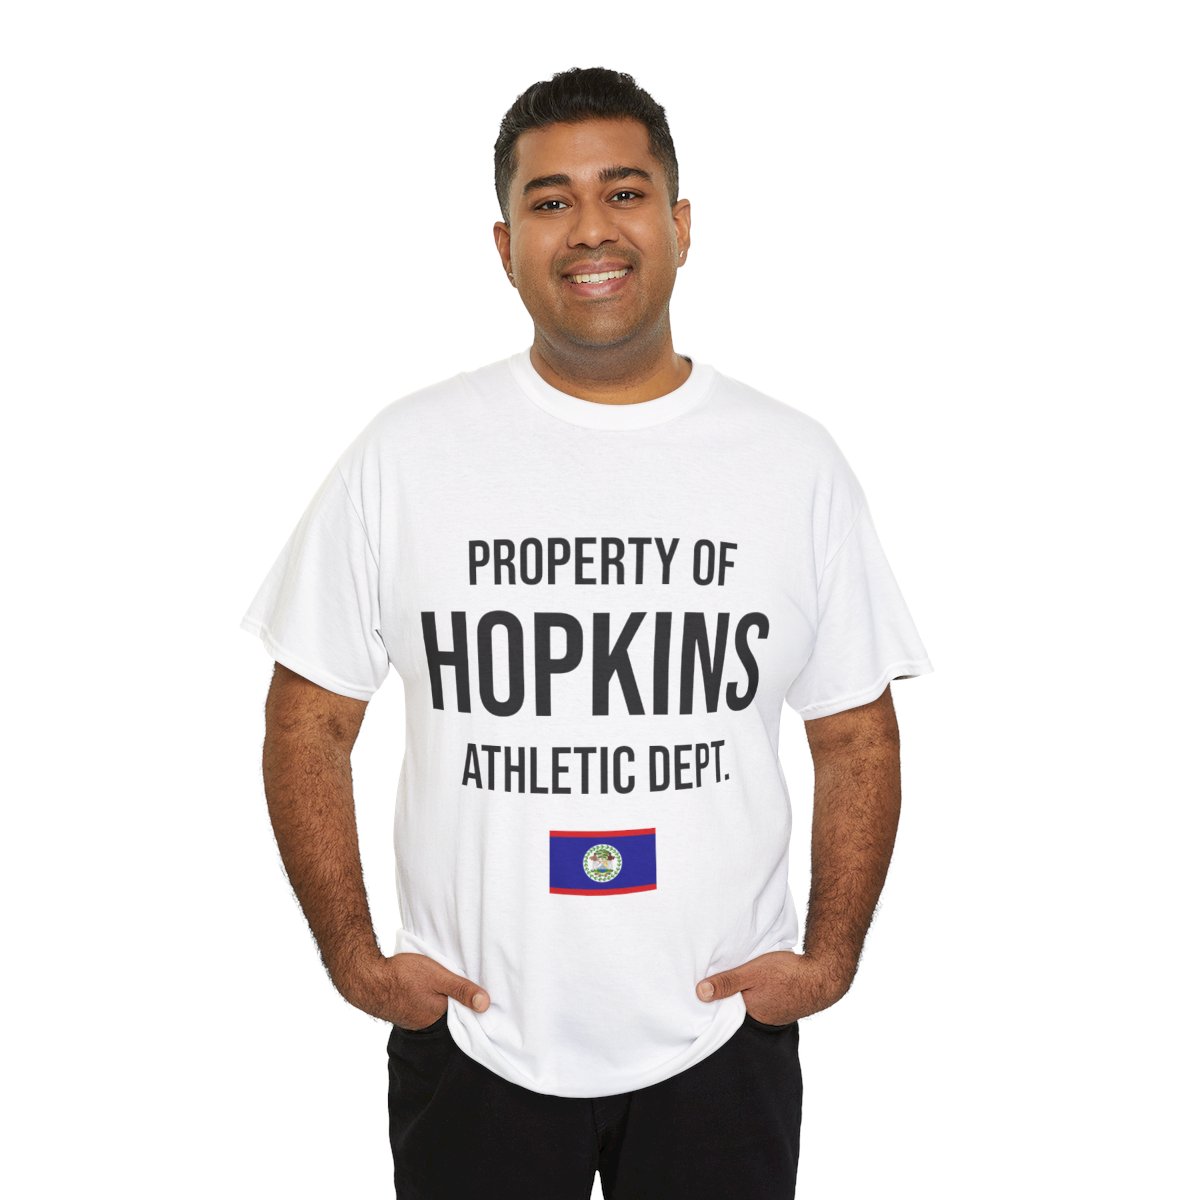 Hopkins Athletic Dept. Unisex Tshirt product thumbnail image